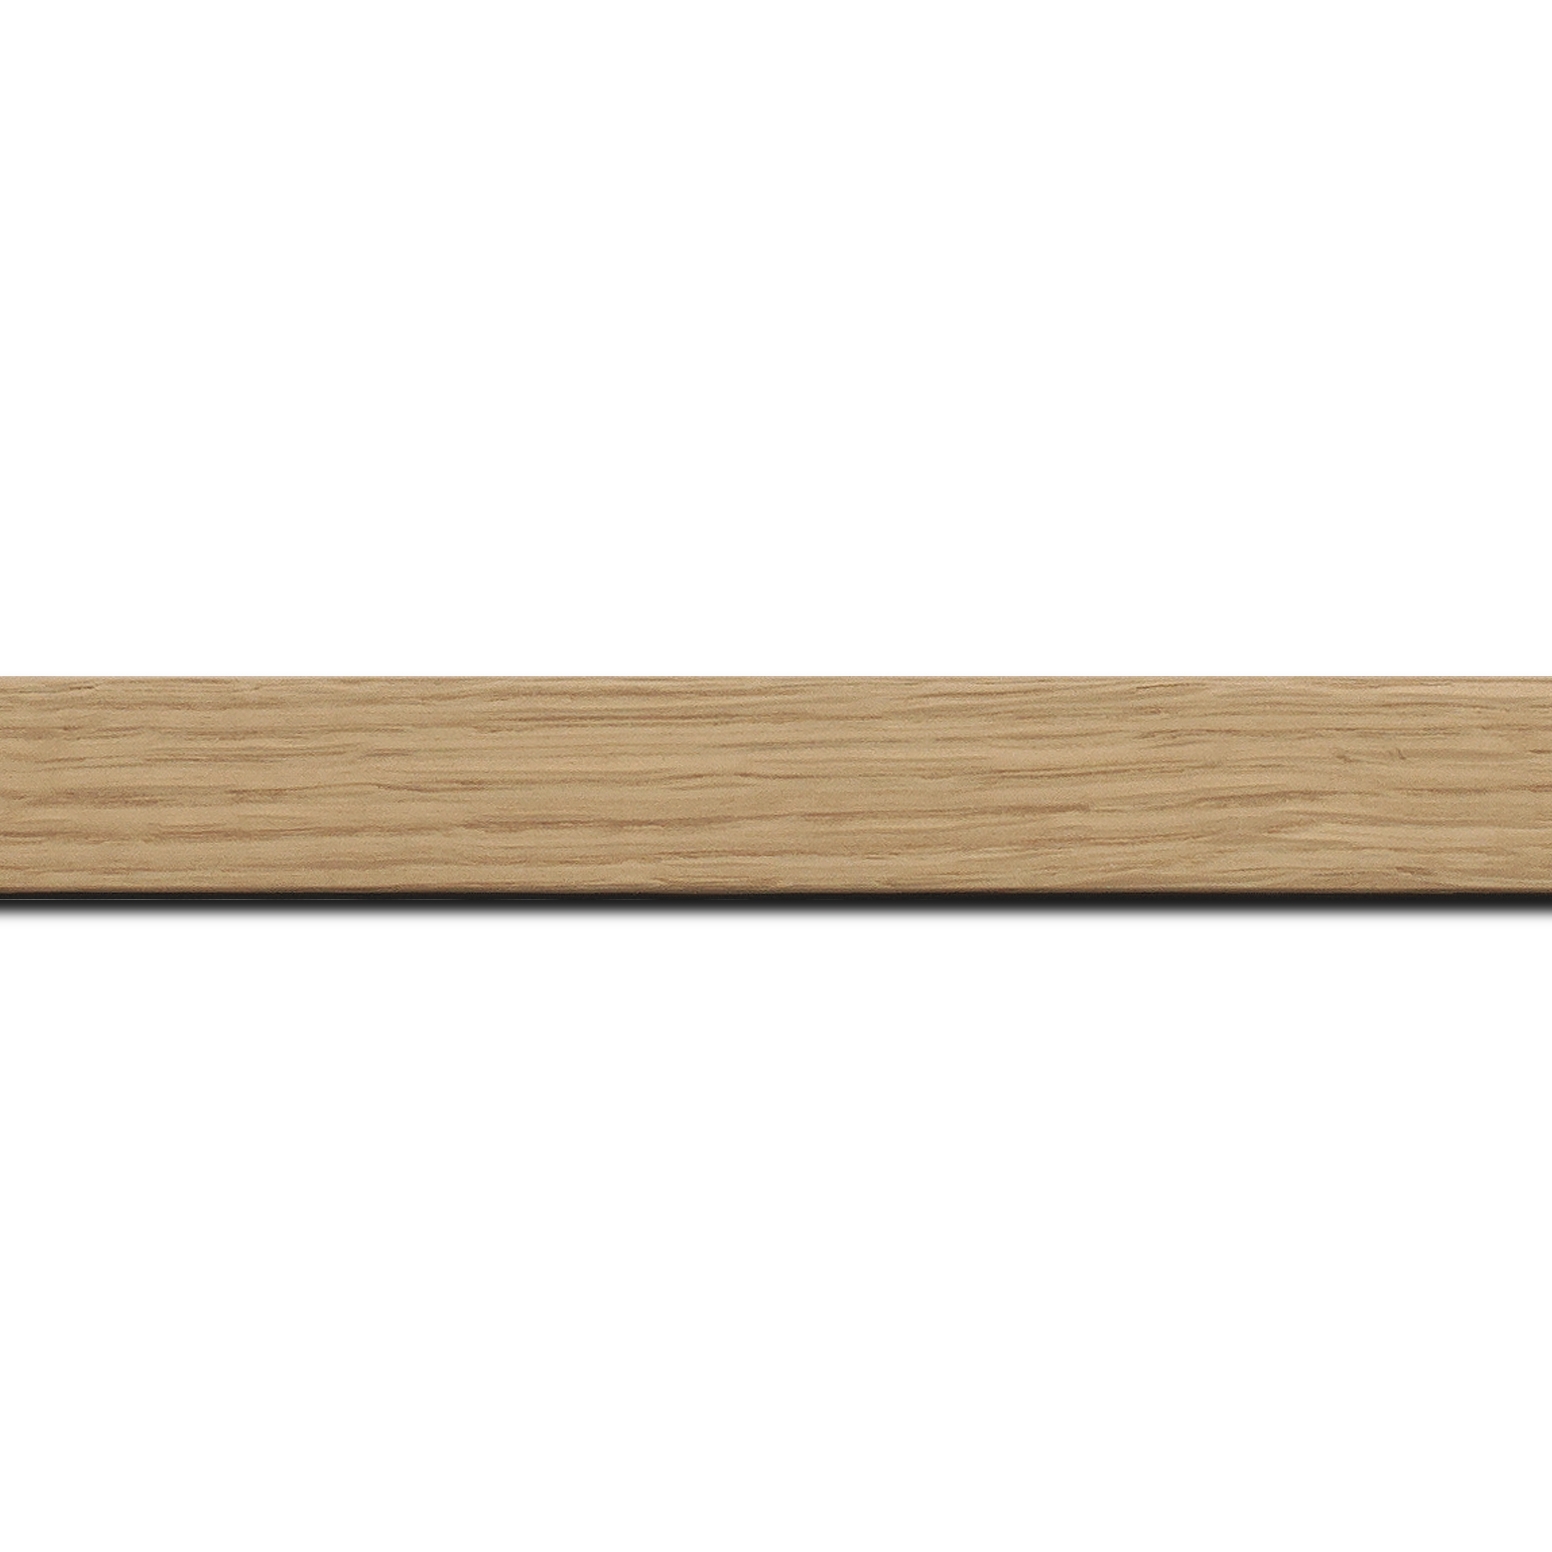 Pack par 12m, bois profil plat largeur 2.1cm hauteur 3.1cm plaquage haut de gamme chêne naturel(longueur baguette pouvant varier entre 2.40m et 3m selon arrivage des bois)